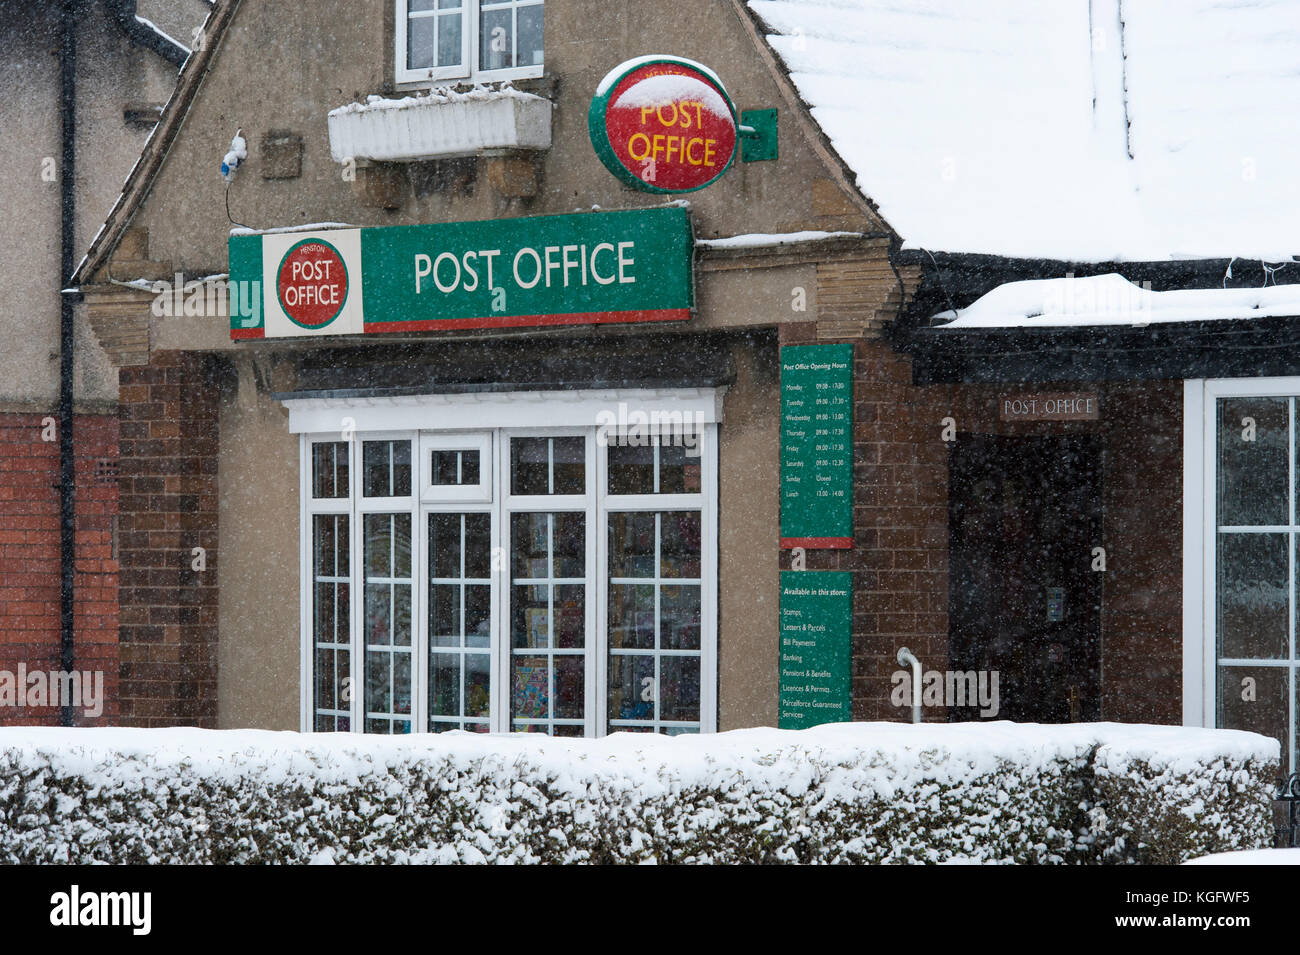 Freddo, nevoso inverno scena con esterno del villaggio Post Office visto attraverso la caduta di fiocchi di neve - Menston, West Yorkshire, Inghilterra, Regno Unito. Foto Stock